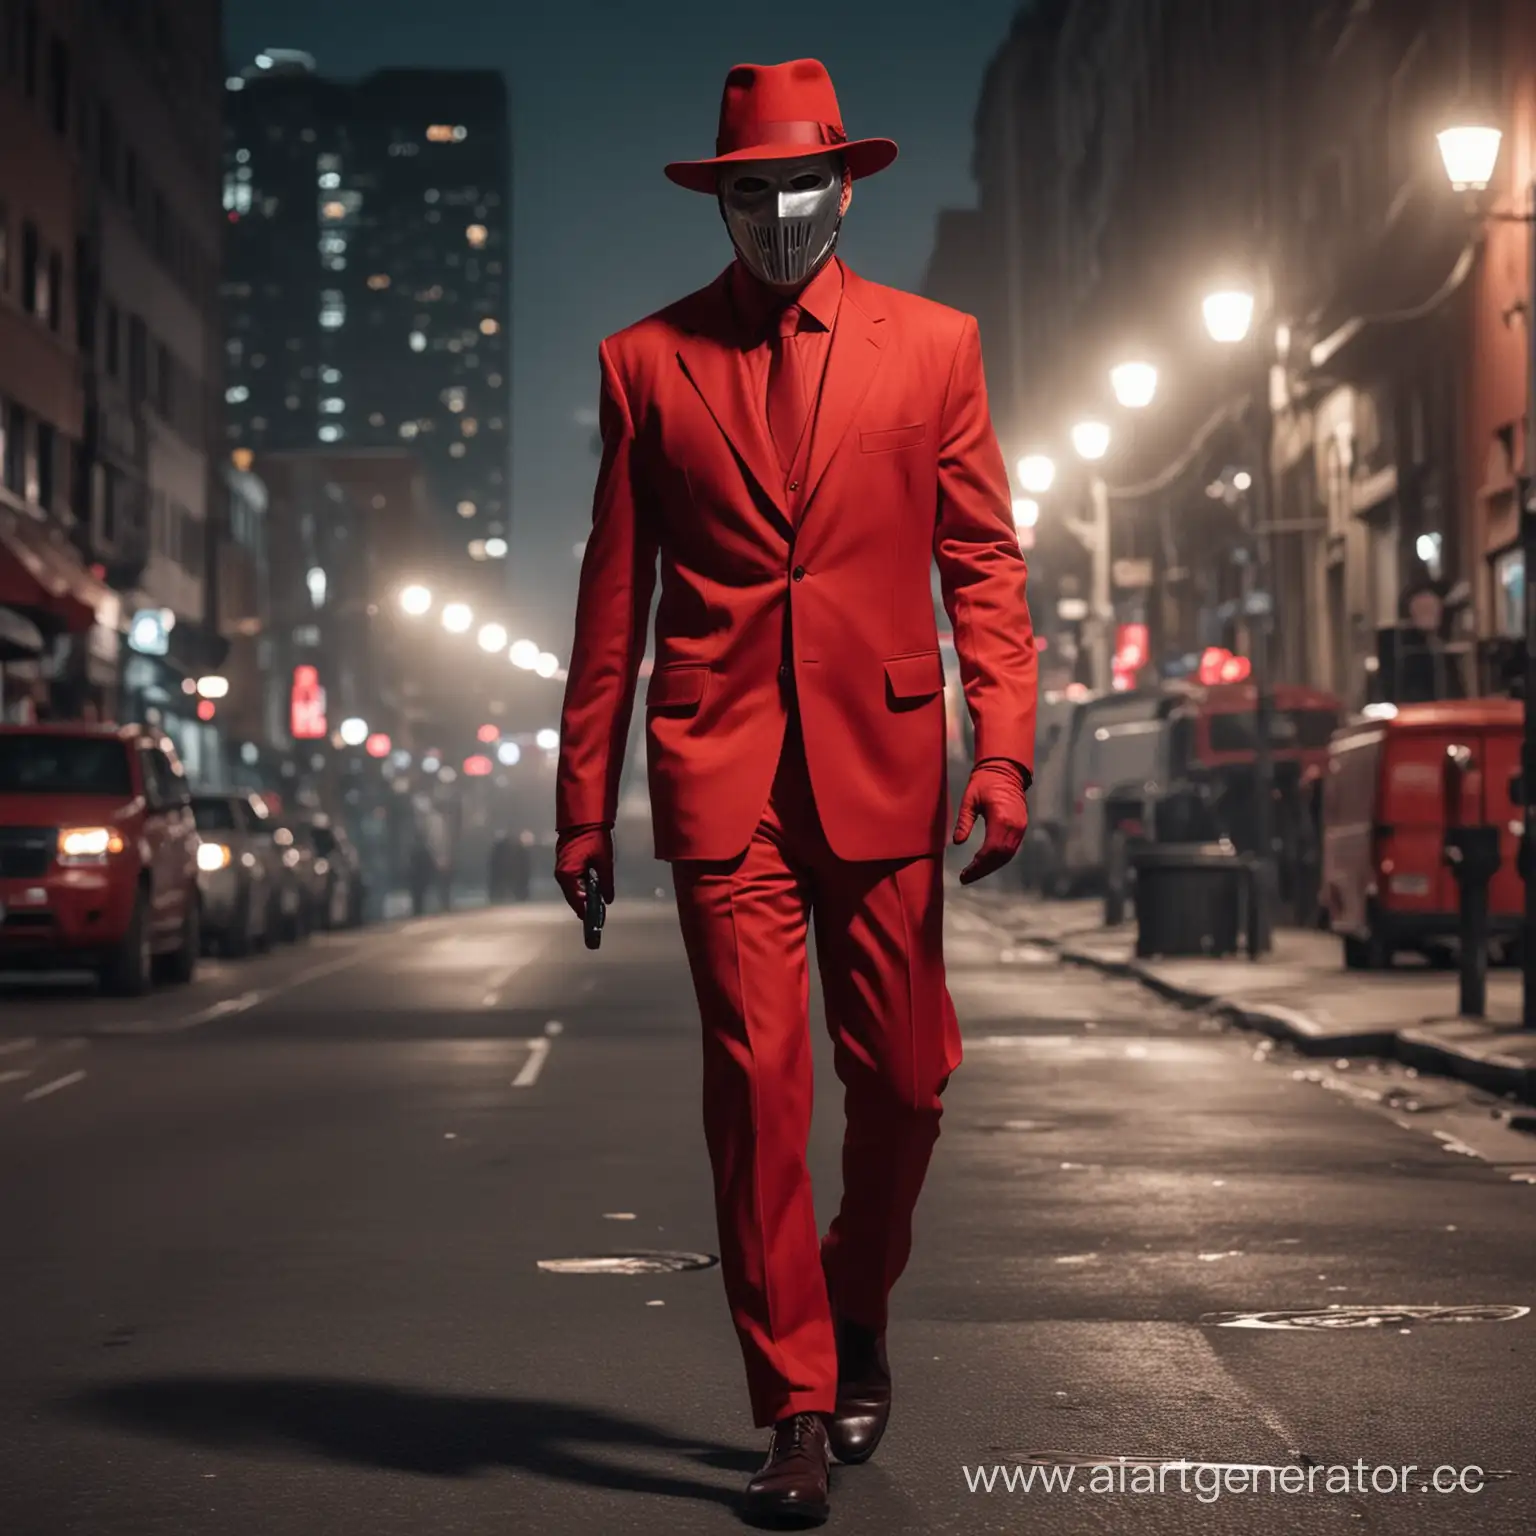 Мужчина в полностью красном деловом костюме, металлической маской на лице, со шляпой с полями, идёт по улице ночного города